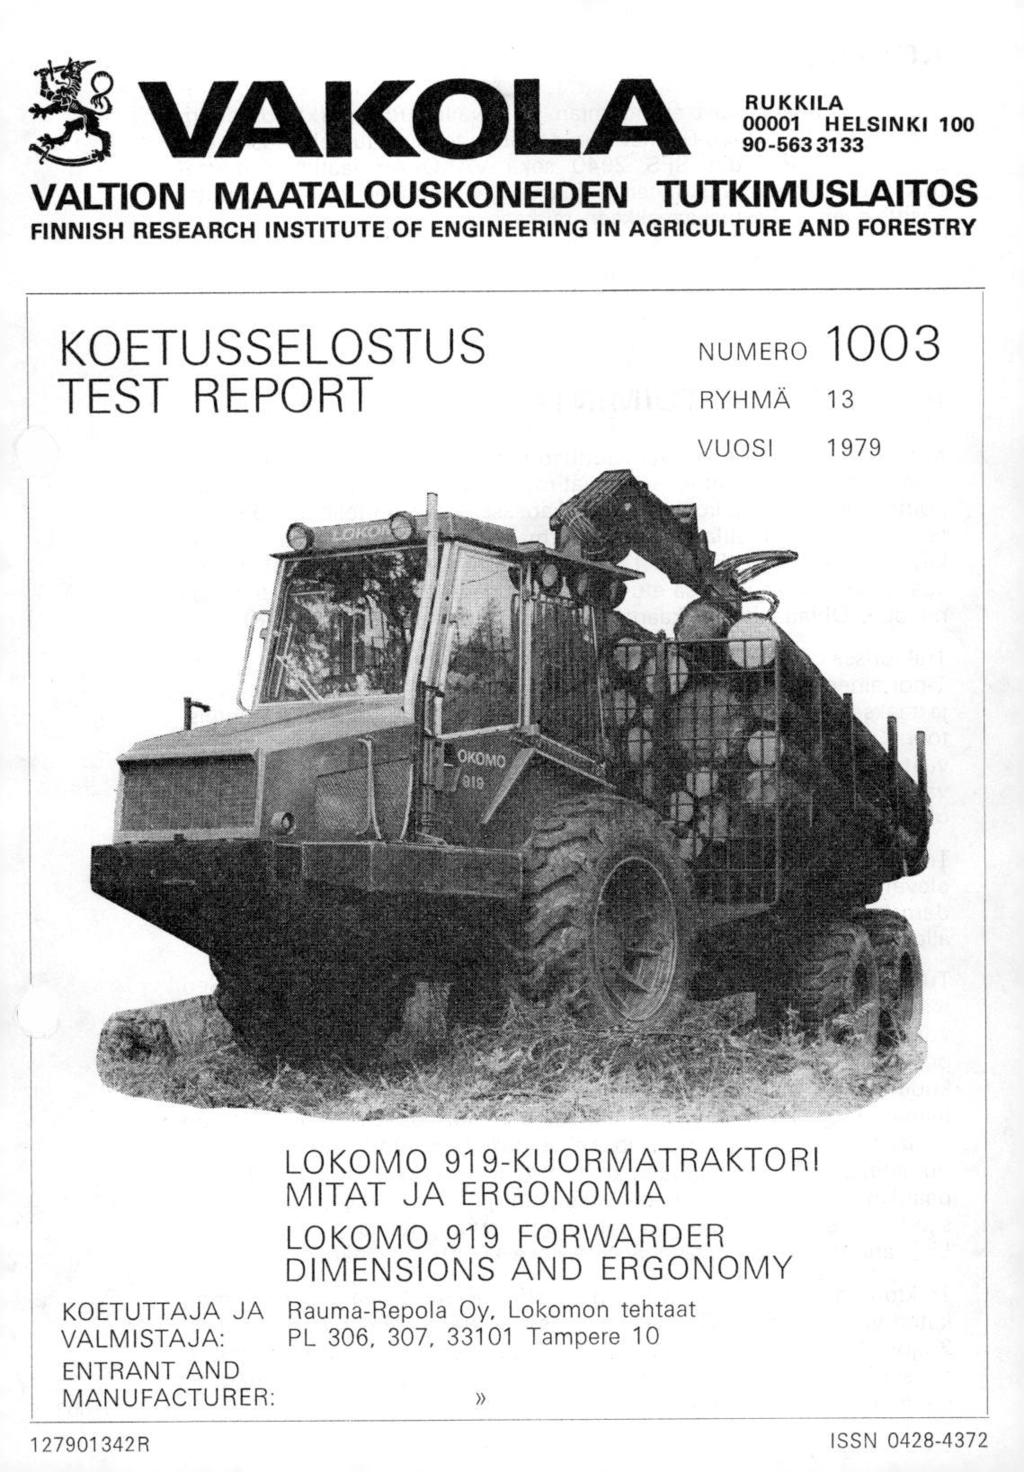 VAIMLA RUKKILA 1 HELSINKI 1 95633133 VALTION MAATALOUSKONEIDEN TUTKIMUSLAITOS FINNISH RESEARCH INSTITUTE OF ENGINEERING IN AGRICULTURE AND FORESTRY KOETUSSELOSTUS TEST REPORT NUMERO 13 RYHMÄ 13 VUOSI